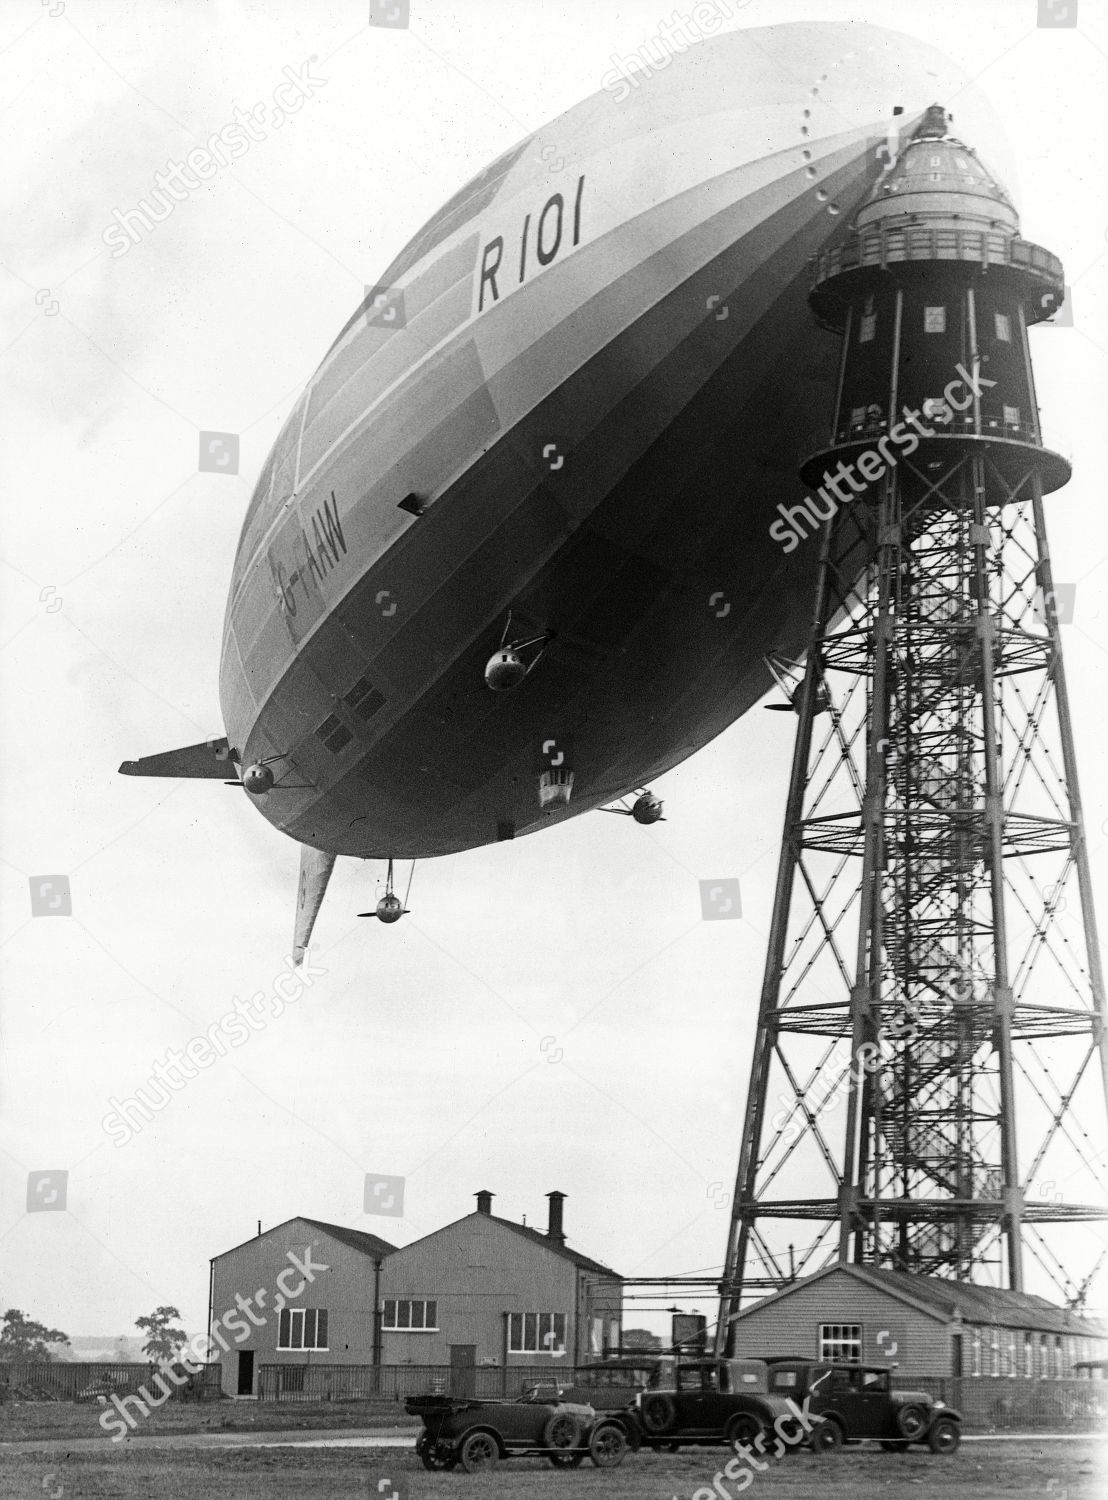 r101-airship-on-mooring-mast-shutterstock-editorial-9868274a.jpg